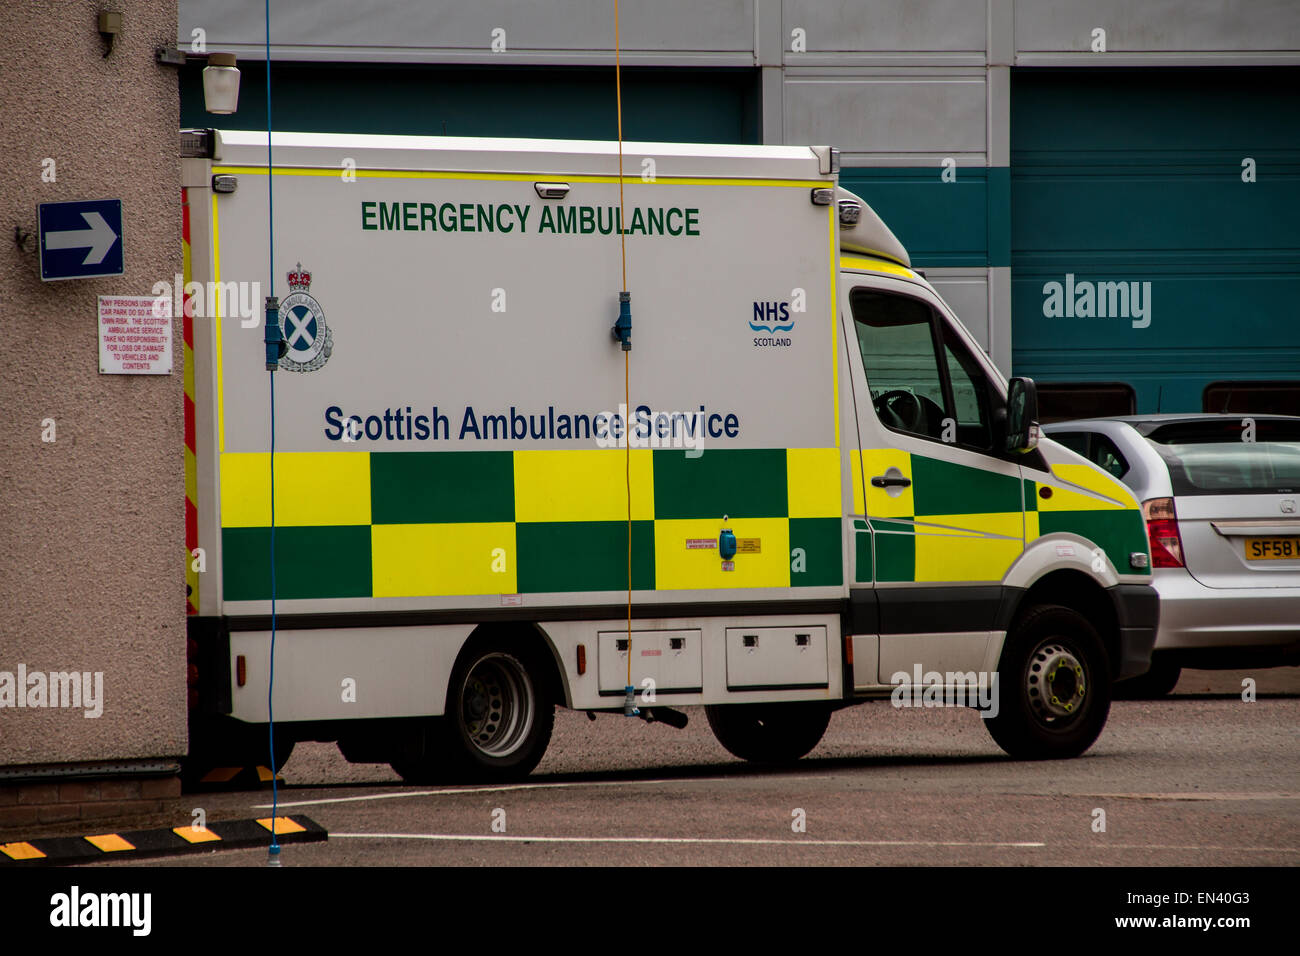 Die NHS schottischer Krankenwagen-Service Osten Zentraldepot befindet sich am 76 West School Road in Dundee, Großbritannien Stockfoto